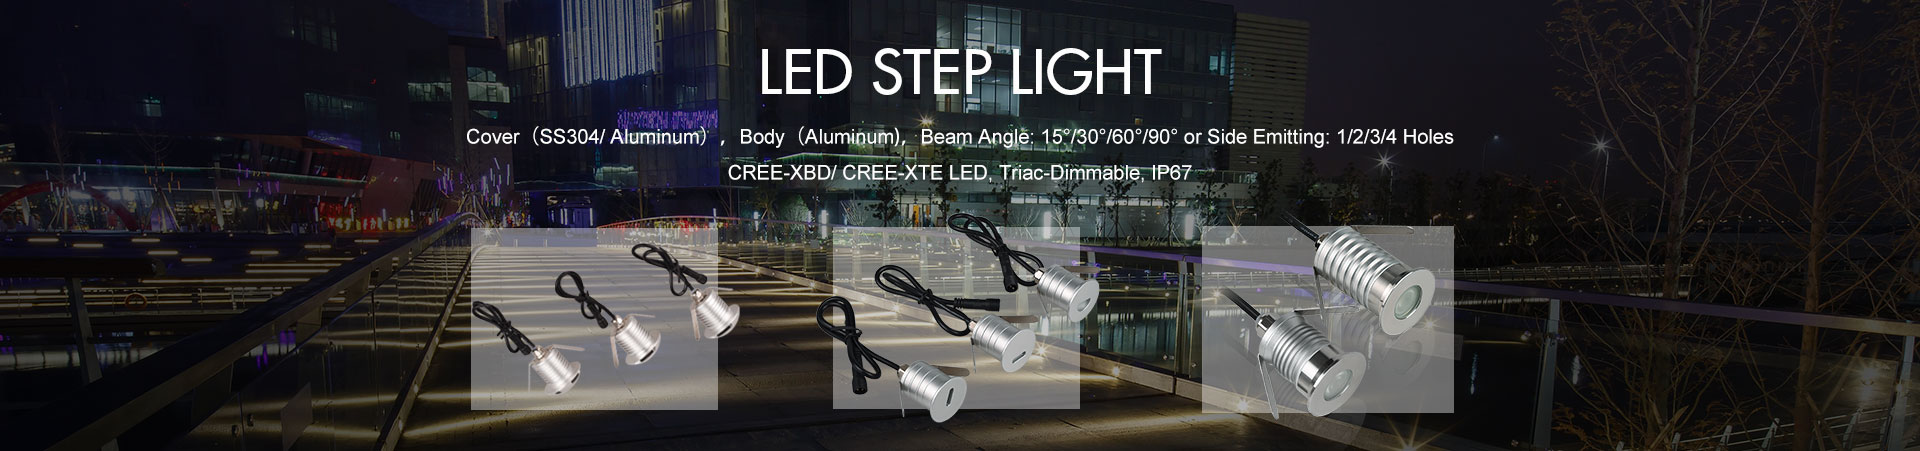 LED Step Lights